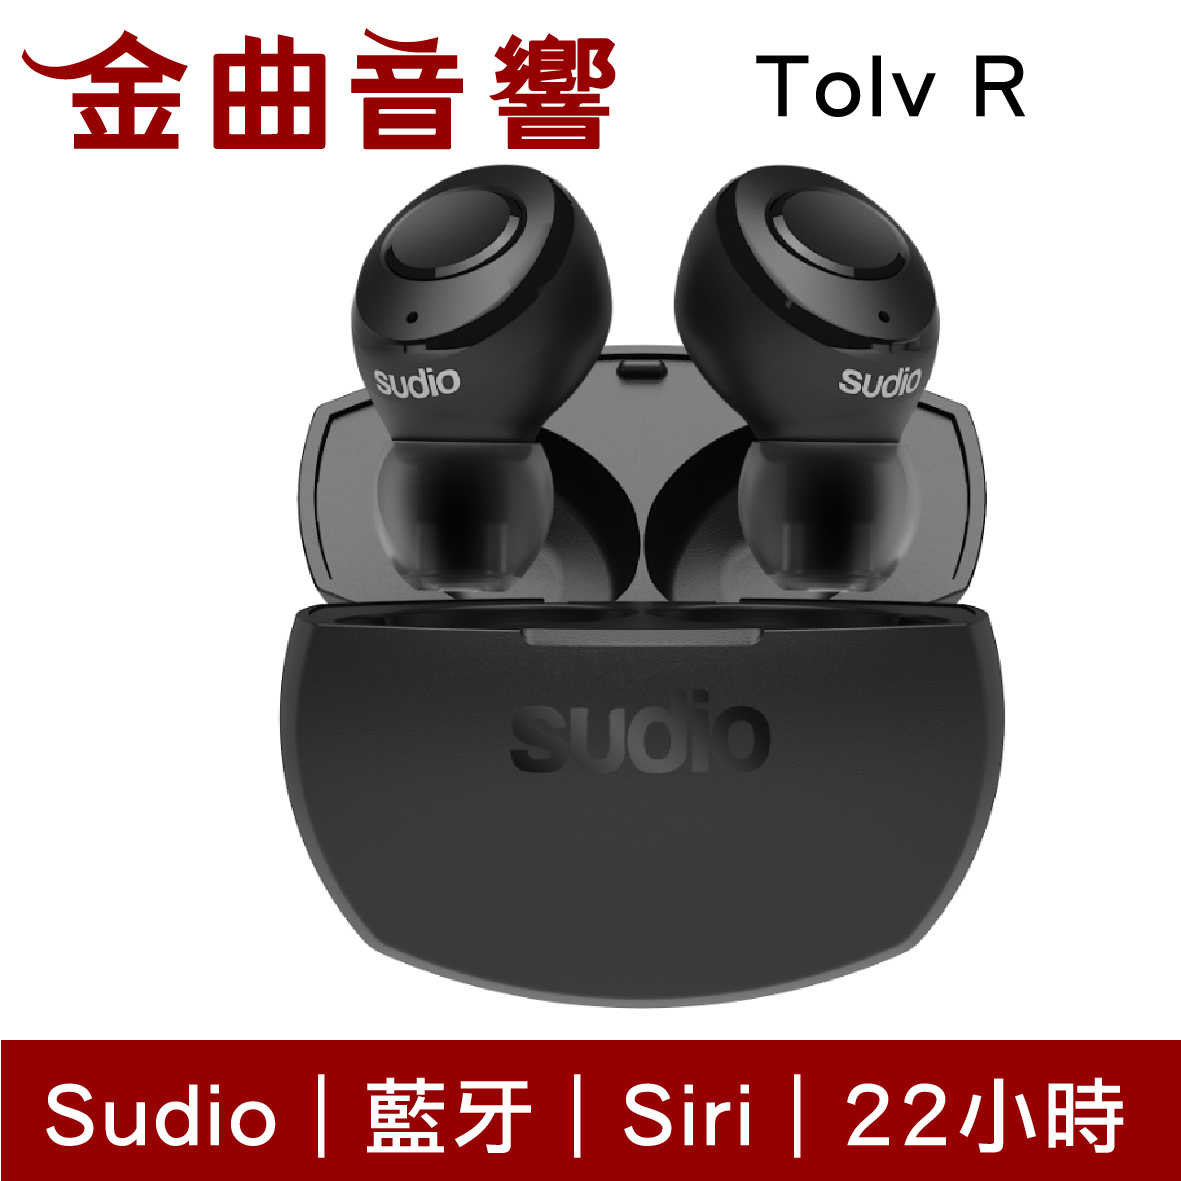 Sudio Tolv R 多色可選 真無線 藍芽耳機 可通話 語音助理 TolvR | 金曲音響